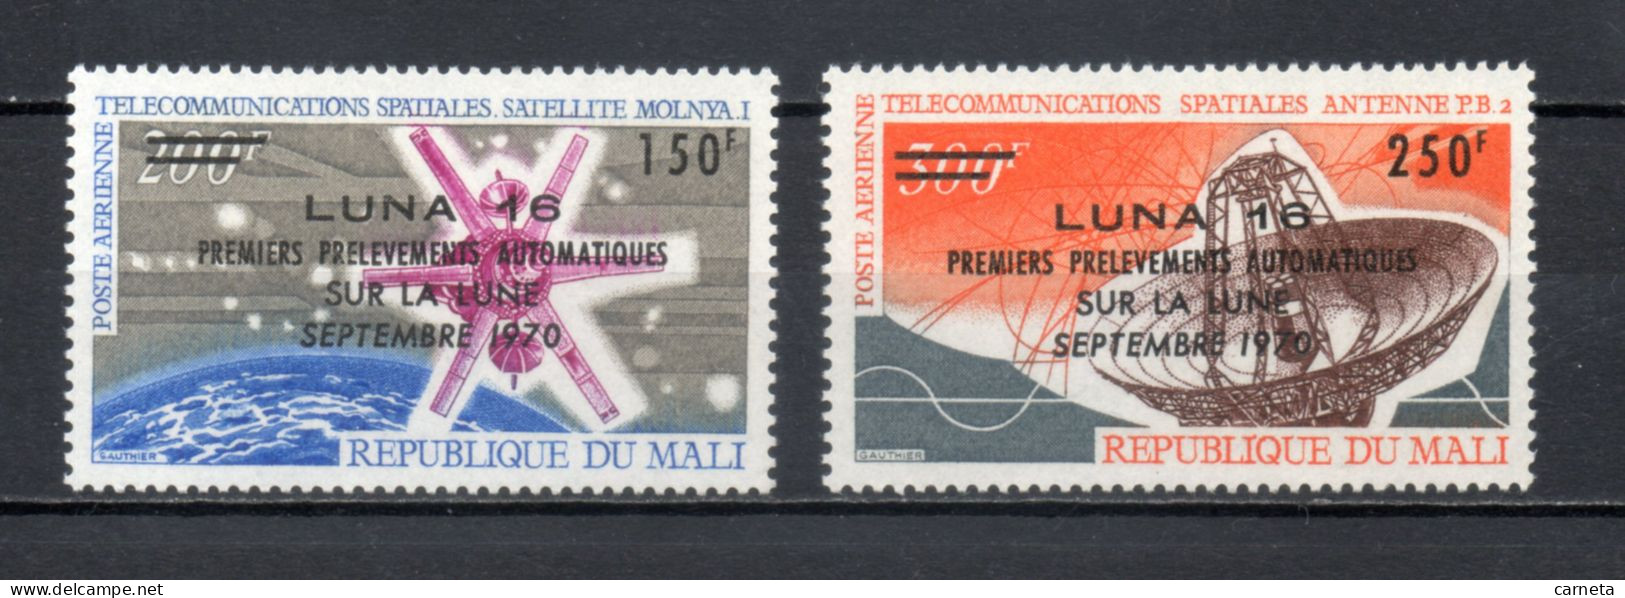 MALI  PA  N° 108 + 109   NEUFS SANS CHARNIERE  COTE 4.50€    ESPACE SURCHARGE - Mali (1959-...)